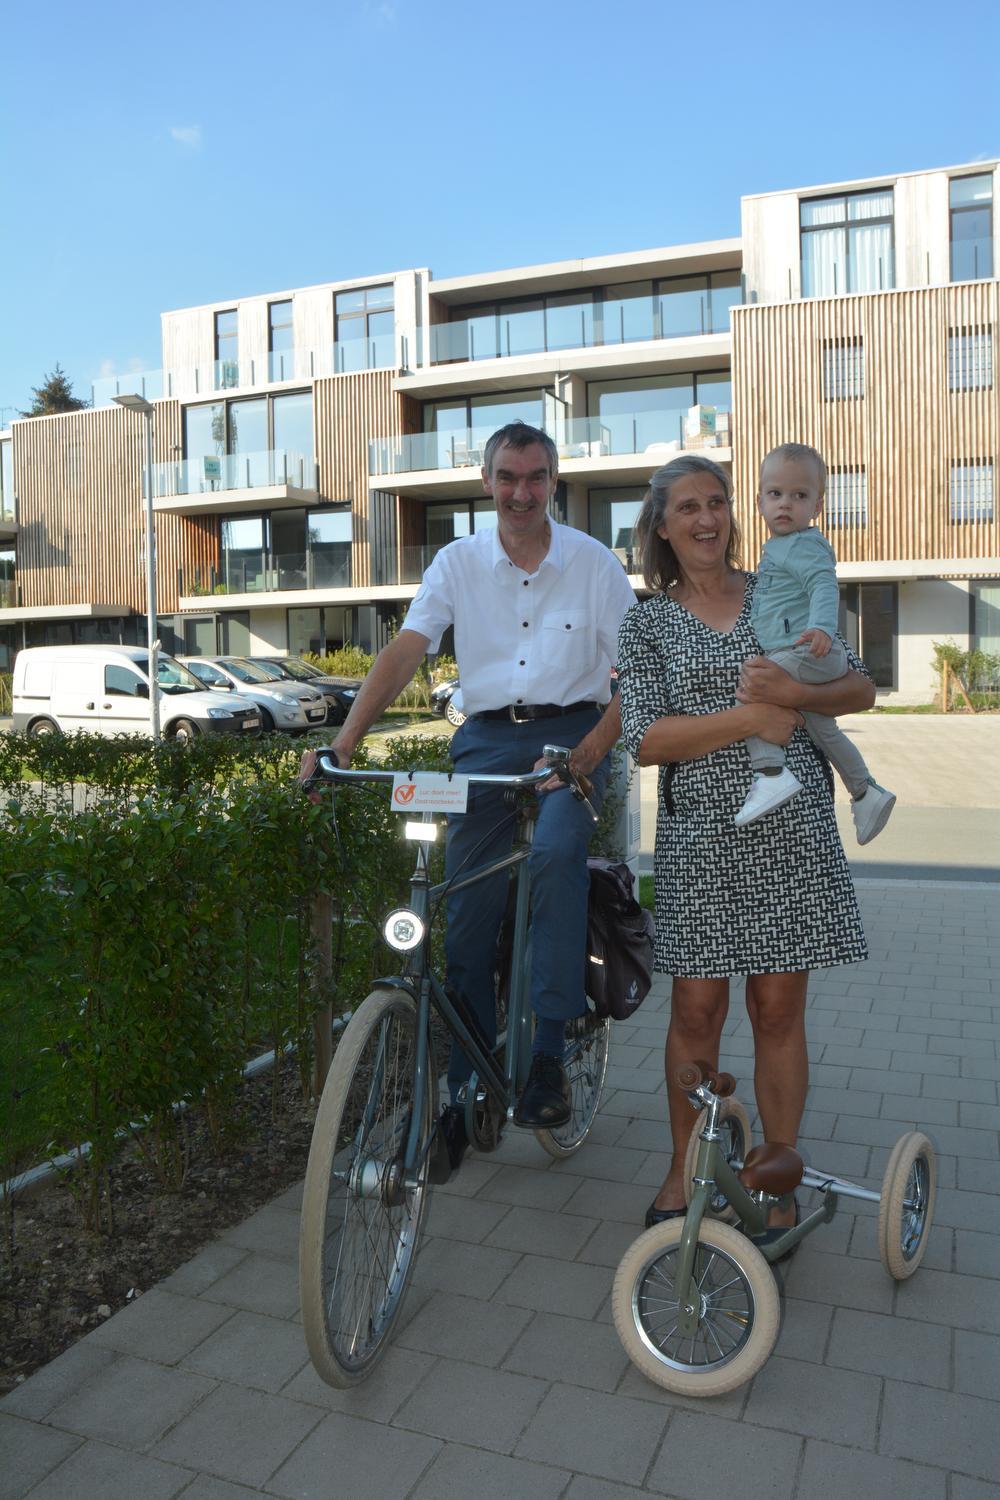 Op de nieuwe wijk De Krinkel heeft de nieuwe burgemeester het naar zijn zin met zijn vrouw Mia Vervaeck en kleinkind Cyriel.